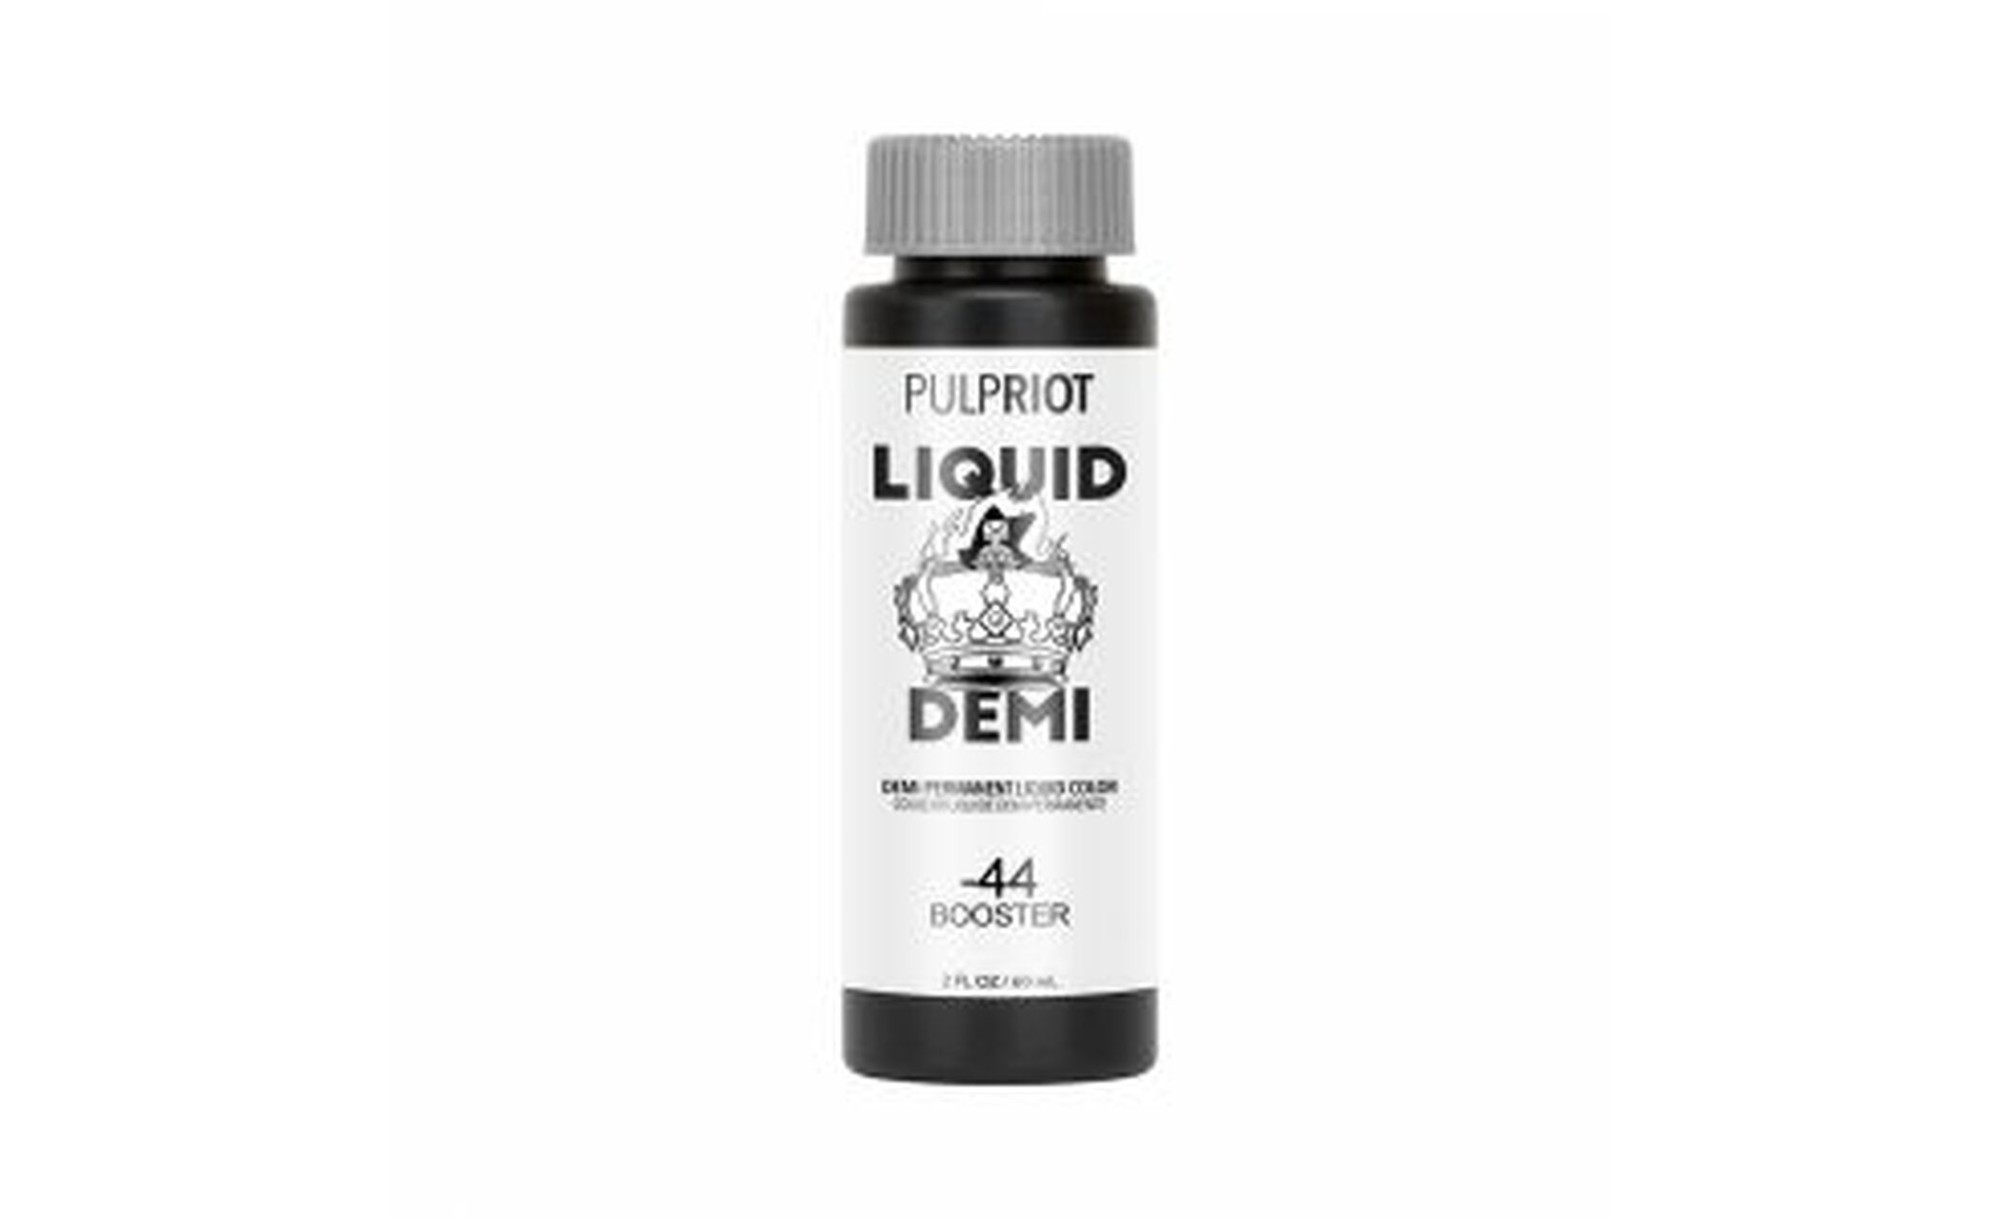 Pulp Riot Liquid Demi Copper Booster -44